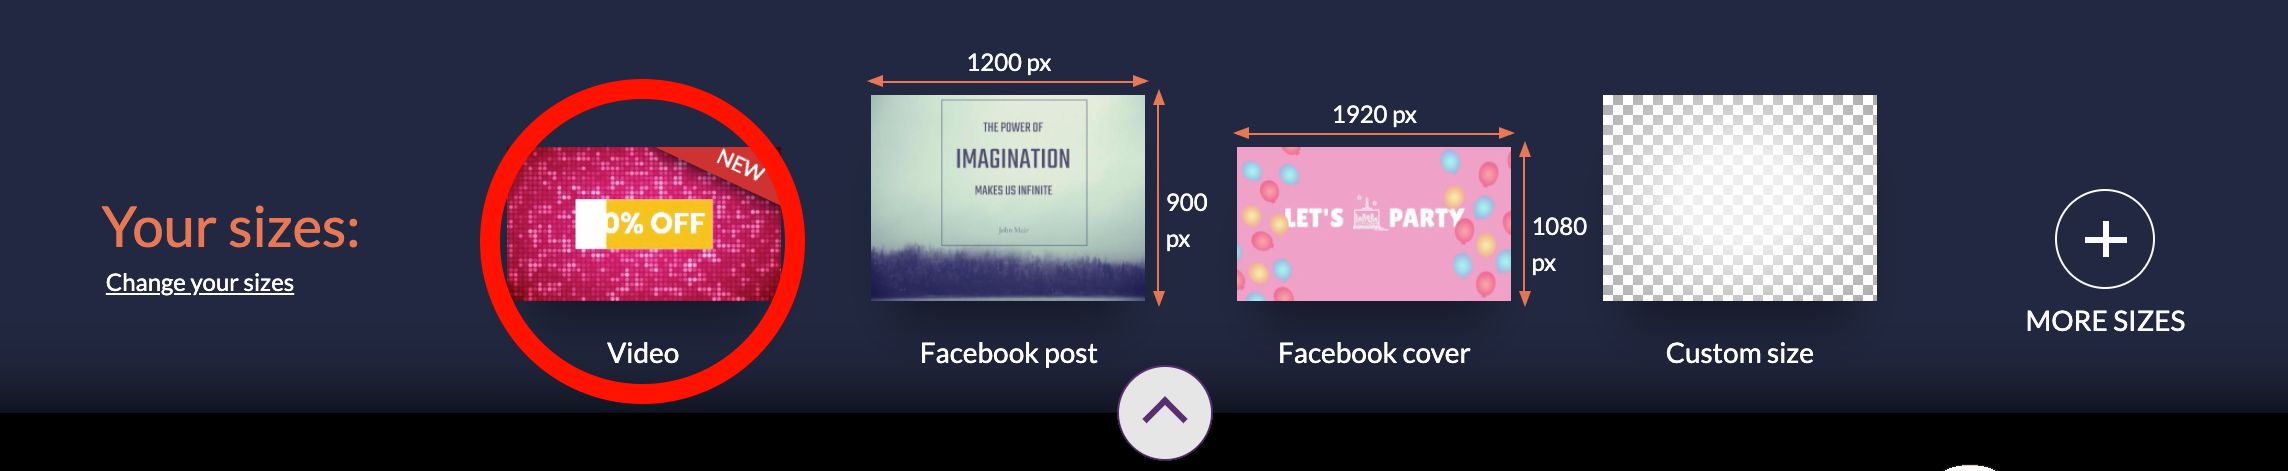 Étape 2 Commencez avec un canevas vidéo vierge - Guide des publicités vidéo Instagram pour développer votre entreprise - Image 